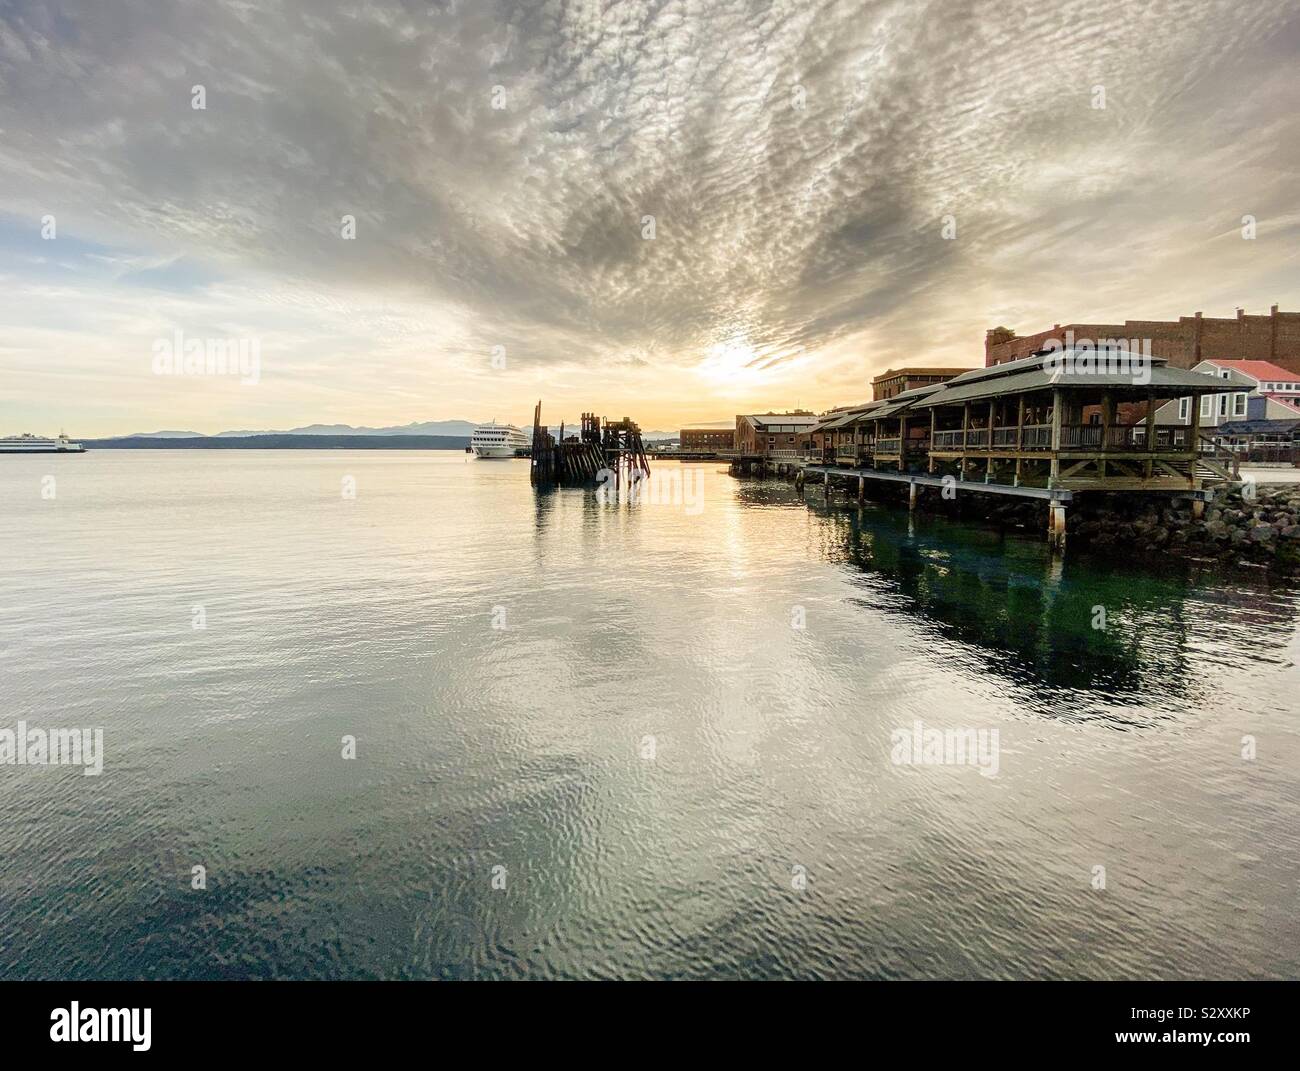 Port Townsend waterfront presso la storica città vecchia. Stato di Washington, USA Foto Stock